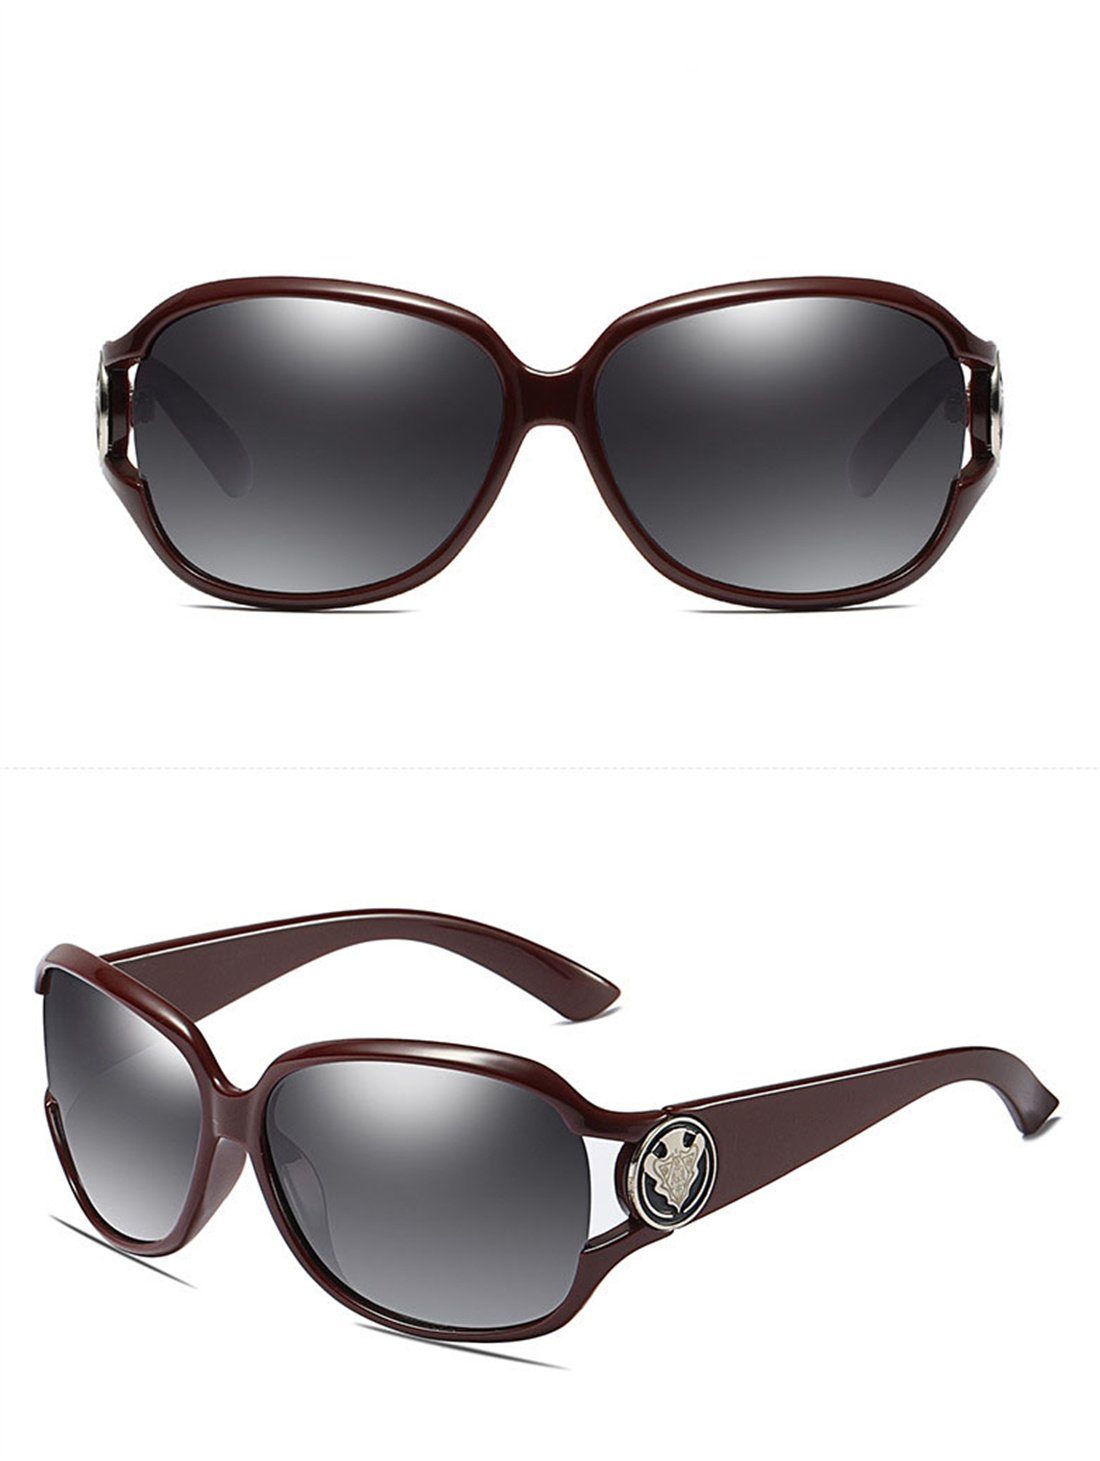 DÖRÖY Sonnenbrille Frauen, Polarisierende Sonnenbrillen für Outdoor-Sonnenbrillen